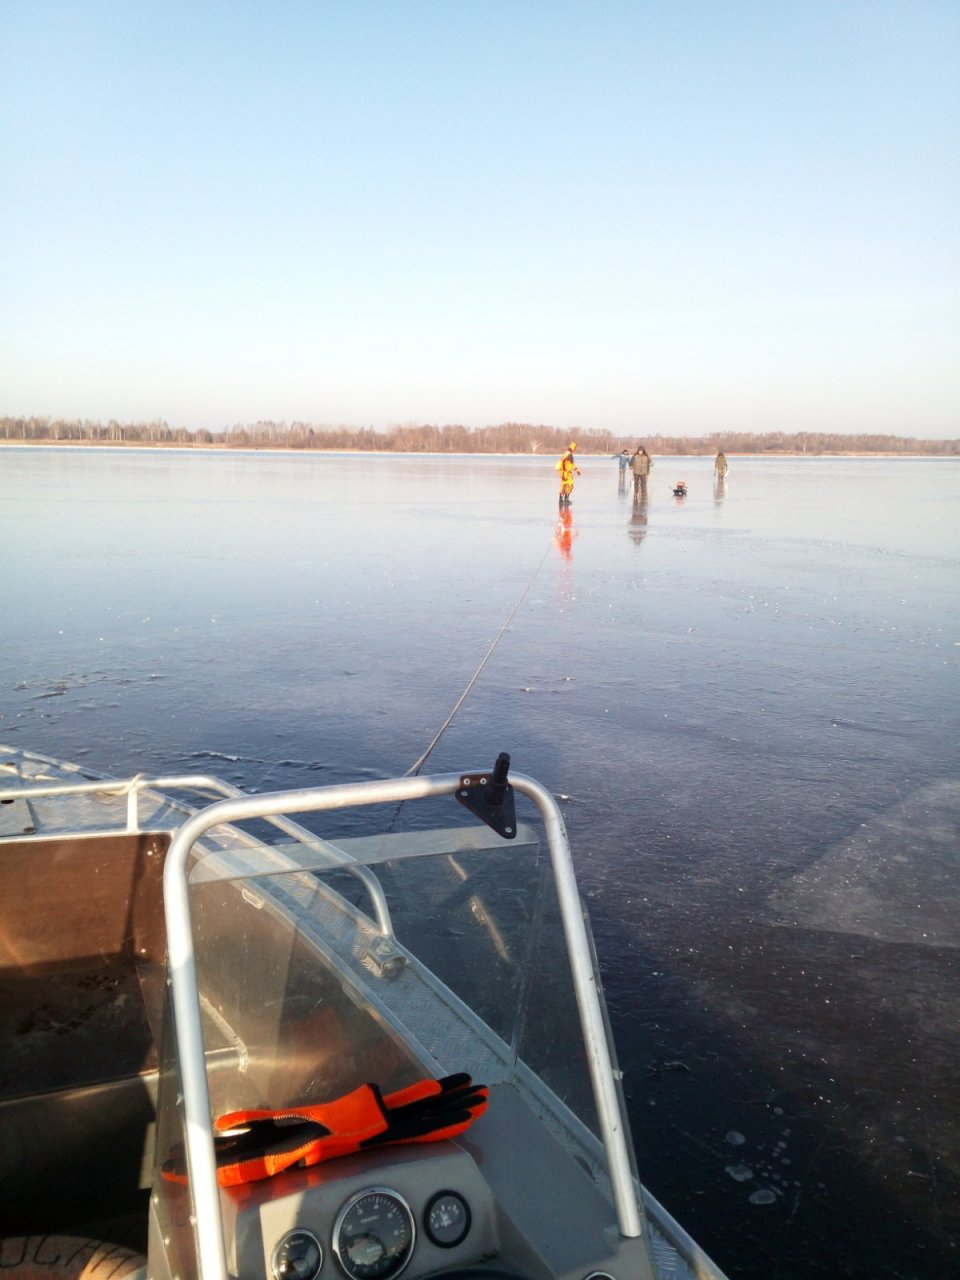 В Марий Эл четверо рыбаков дрейфовали на льдине в устье реки